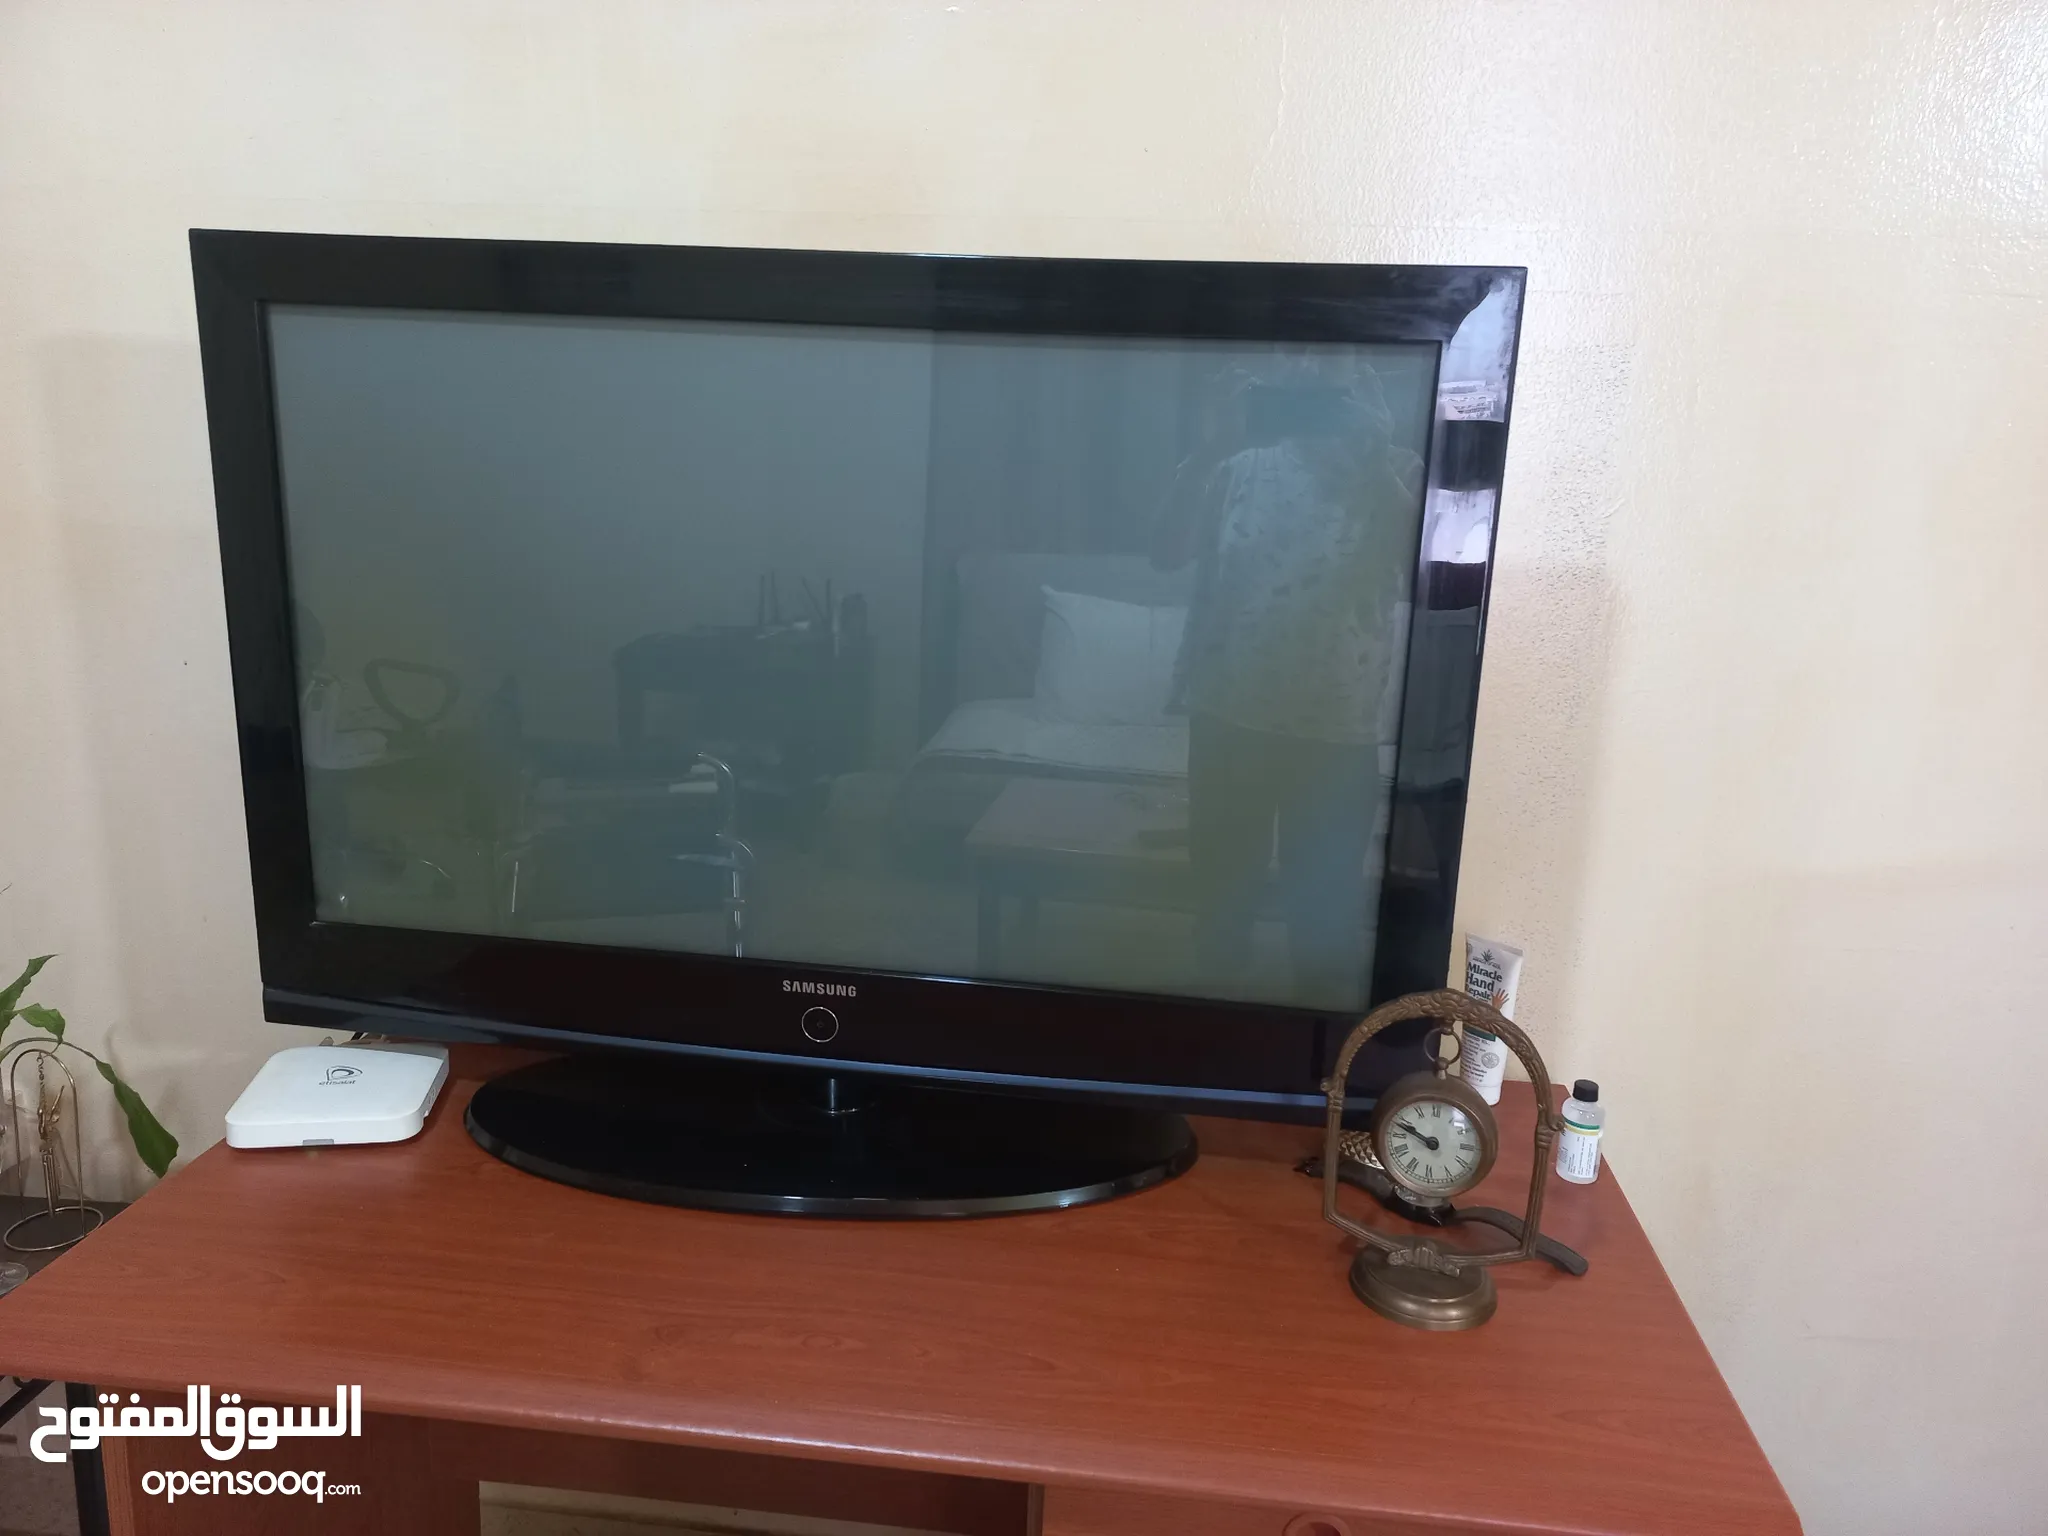 شاشات سامسونج للبيع : افضل تلفزيون سامسونج : ارخص الاسعار : جميع المقاسات :  أبو ظبي | السوق المفتوح